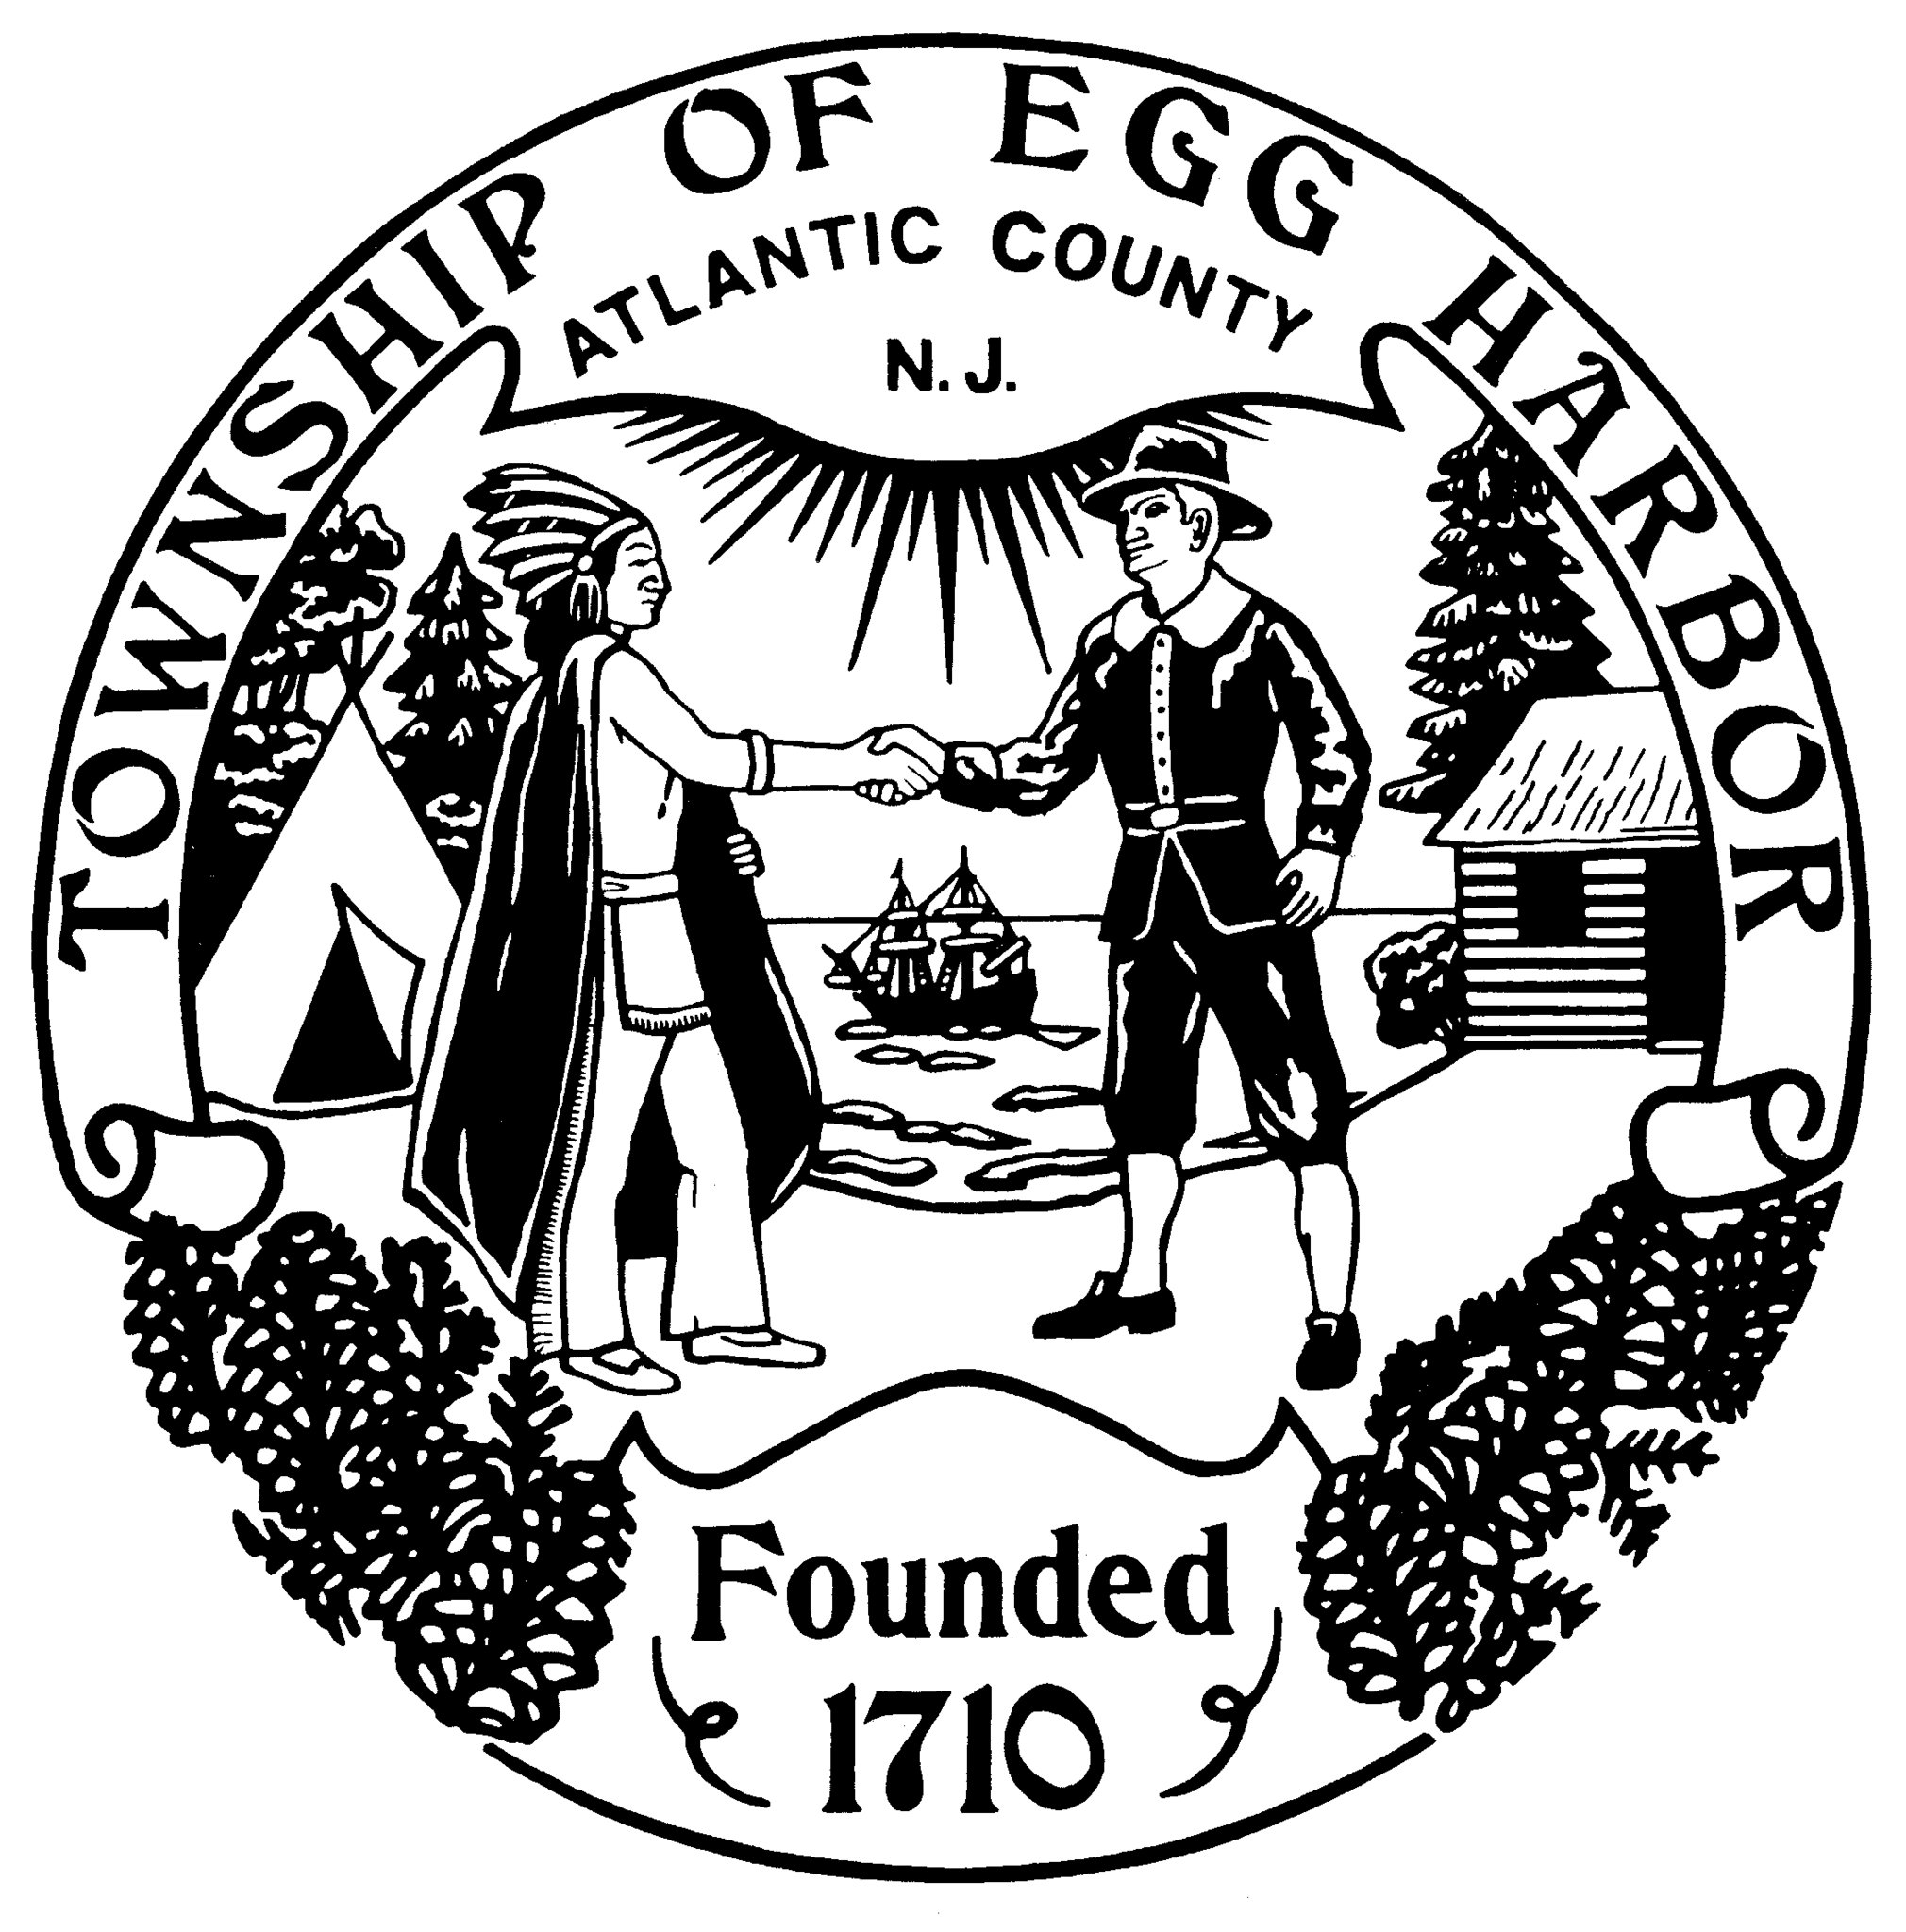 Township of Egg Harbor